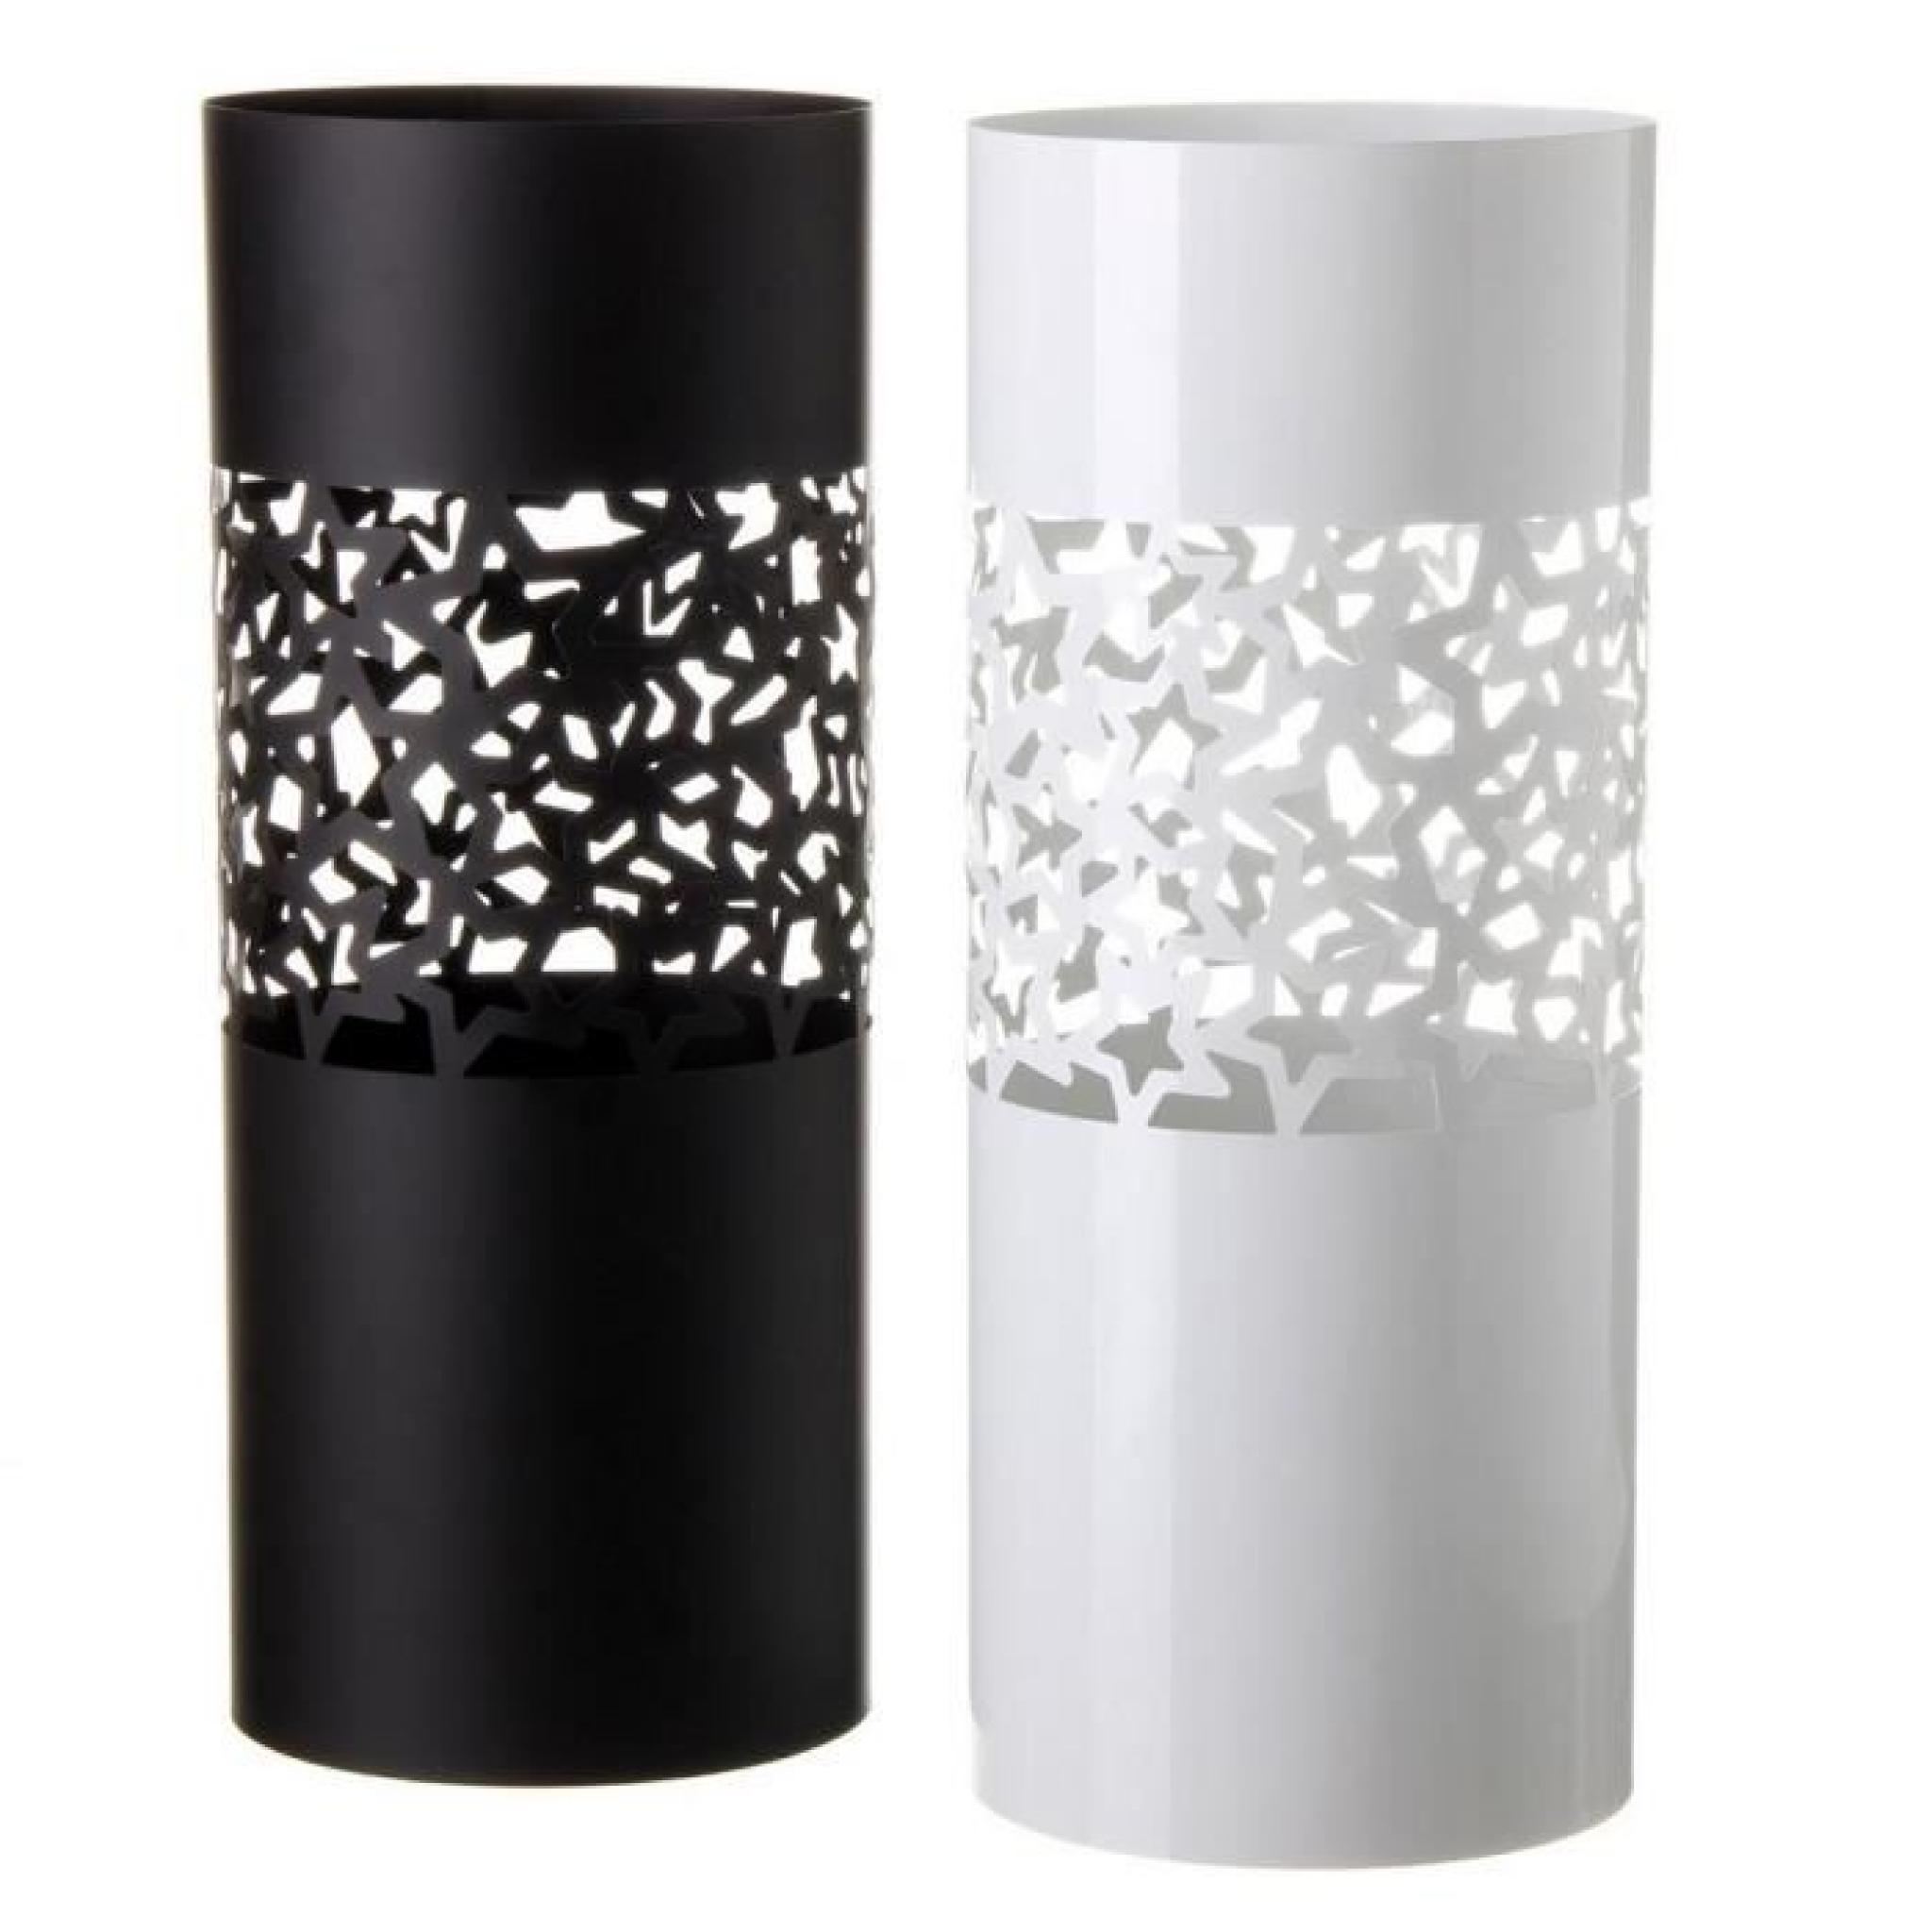 Porte-parapluies métallique noir ou blanc ( 49x19,5 cm) (Blanc)